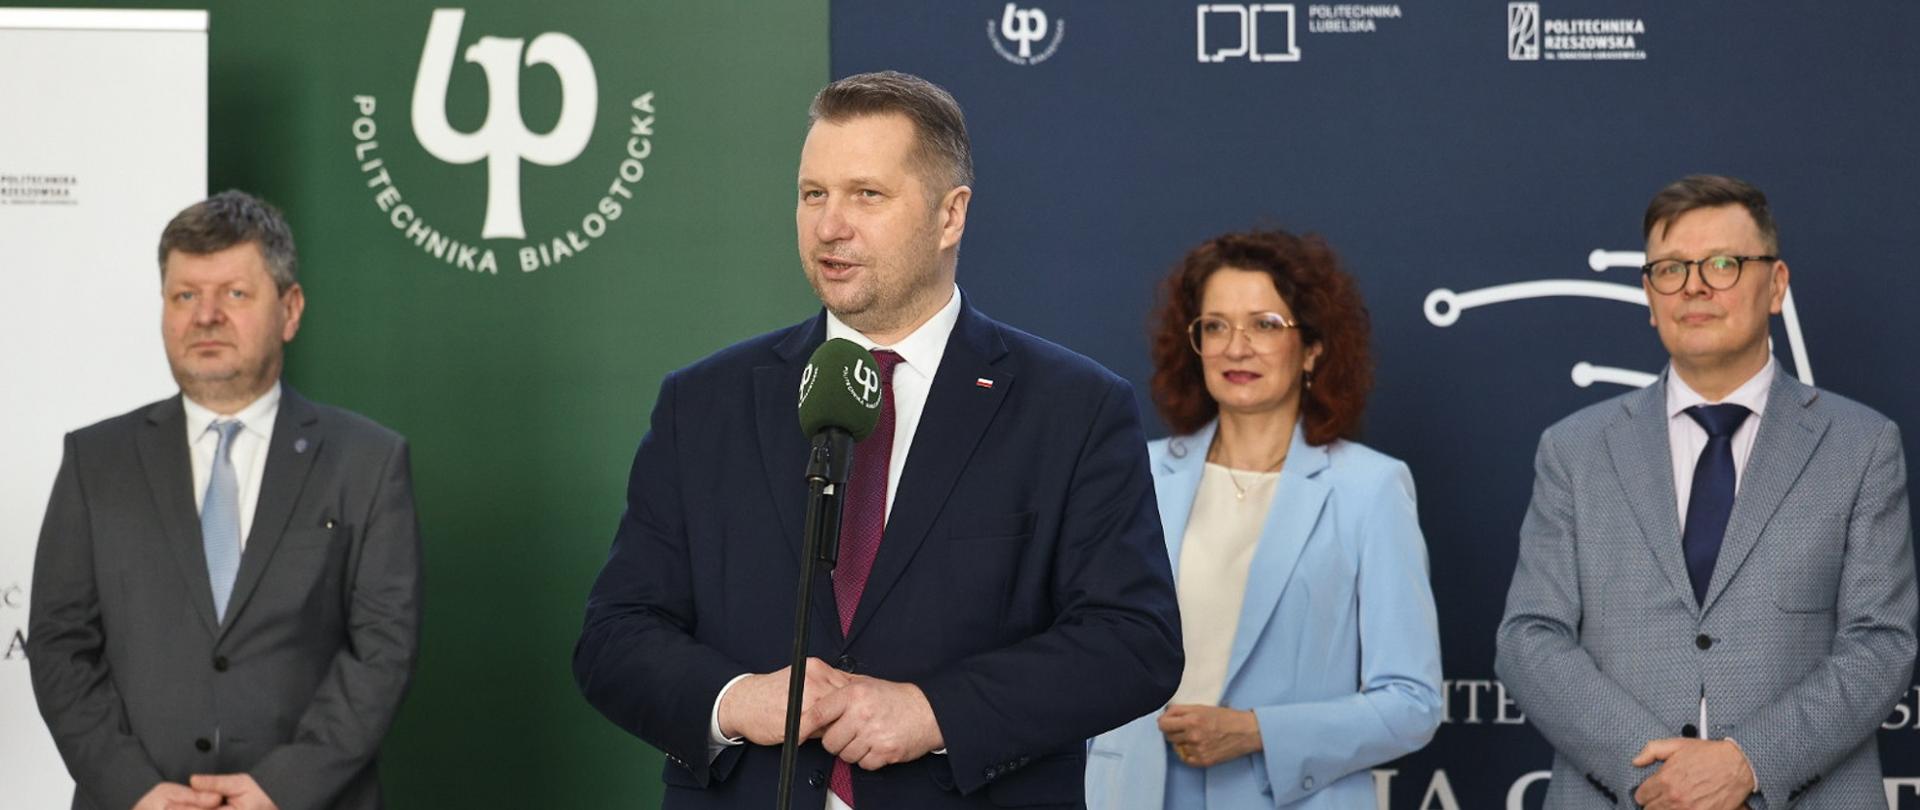 Wizyta ministra Czarnka w Białymstoku